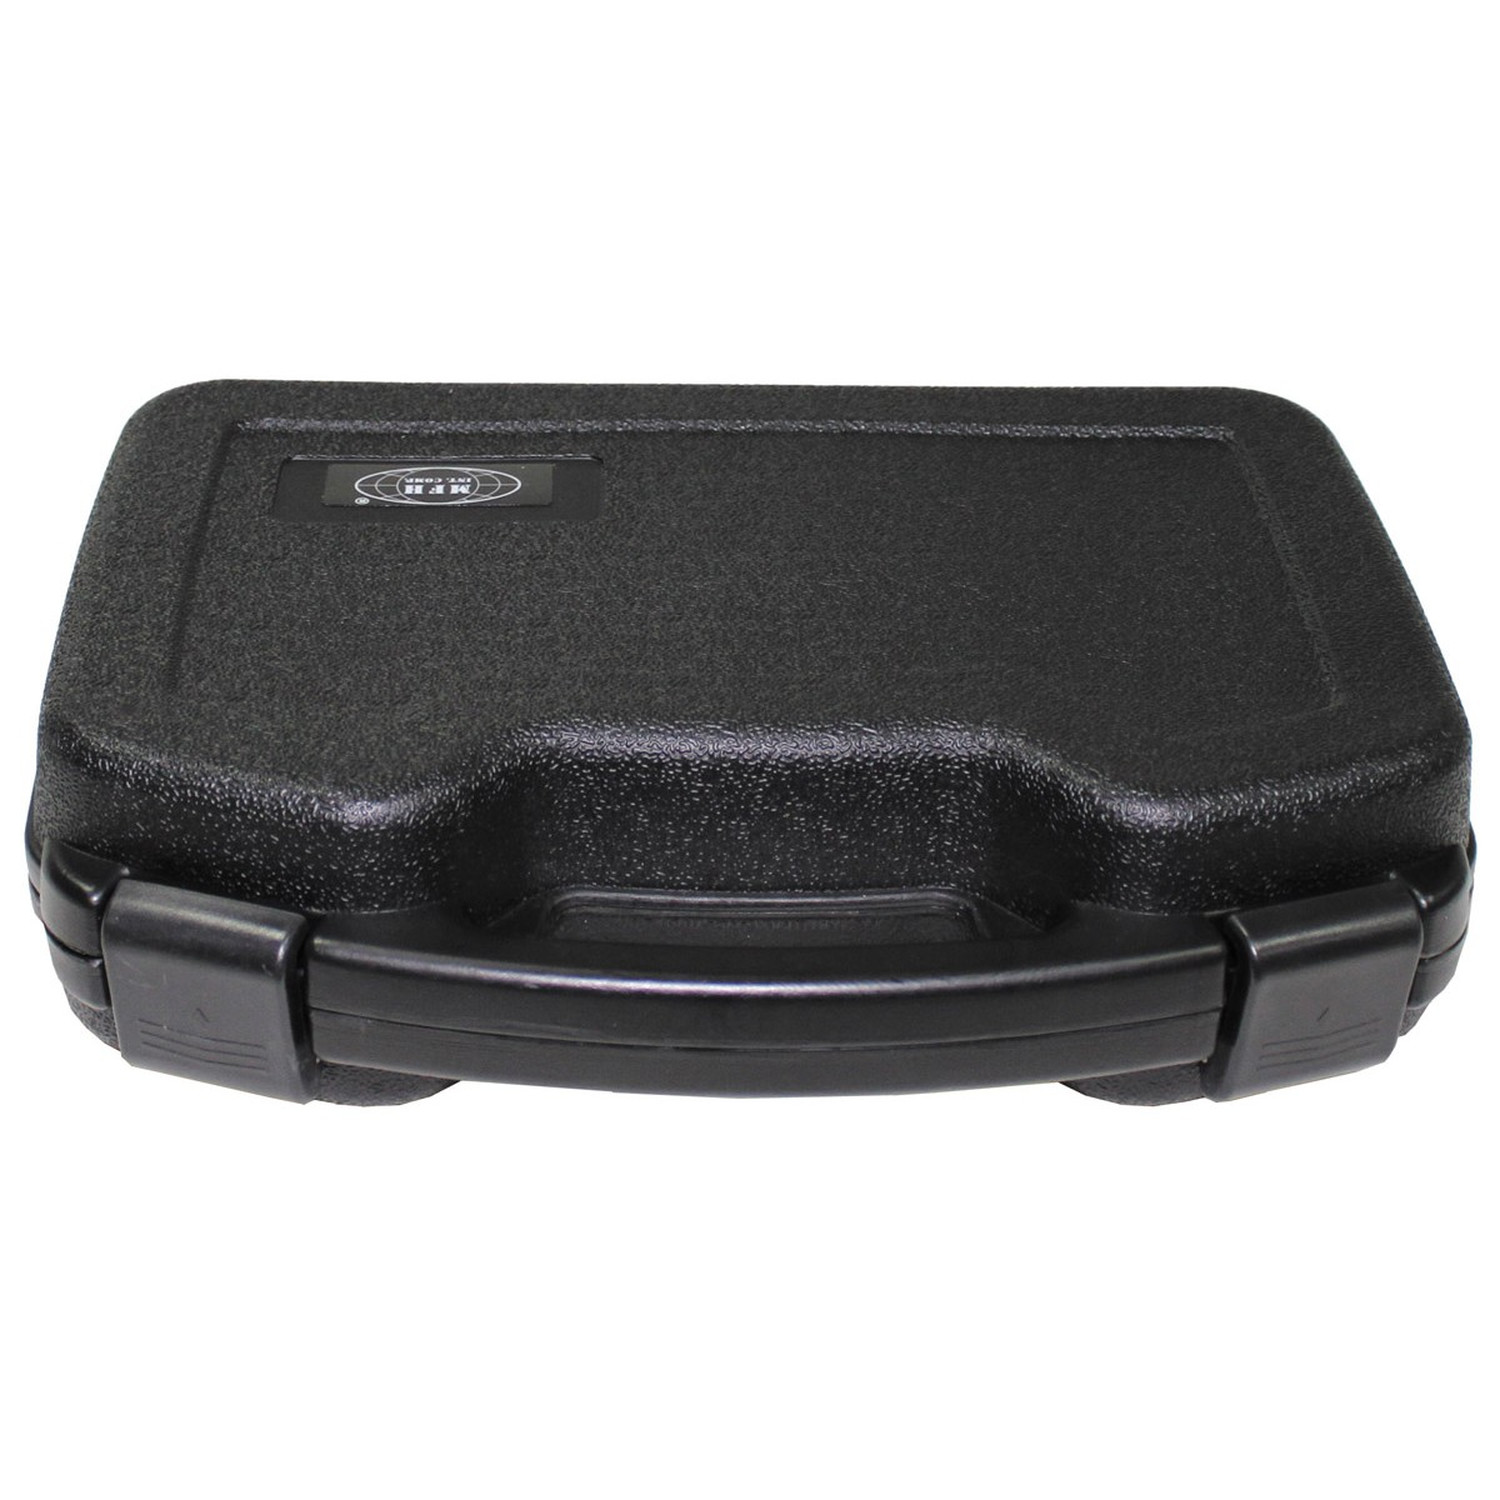 Kunststoff Koffer, abschließbar und gepolstert - Groß 34,5 x 27 x 9 cm, Schwarz